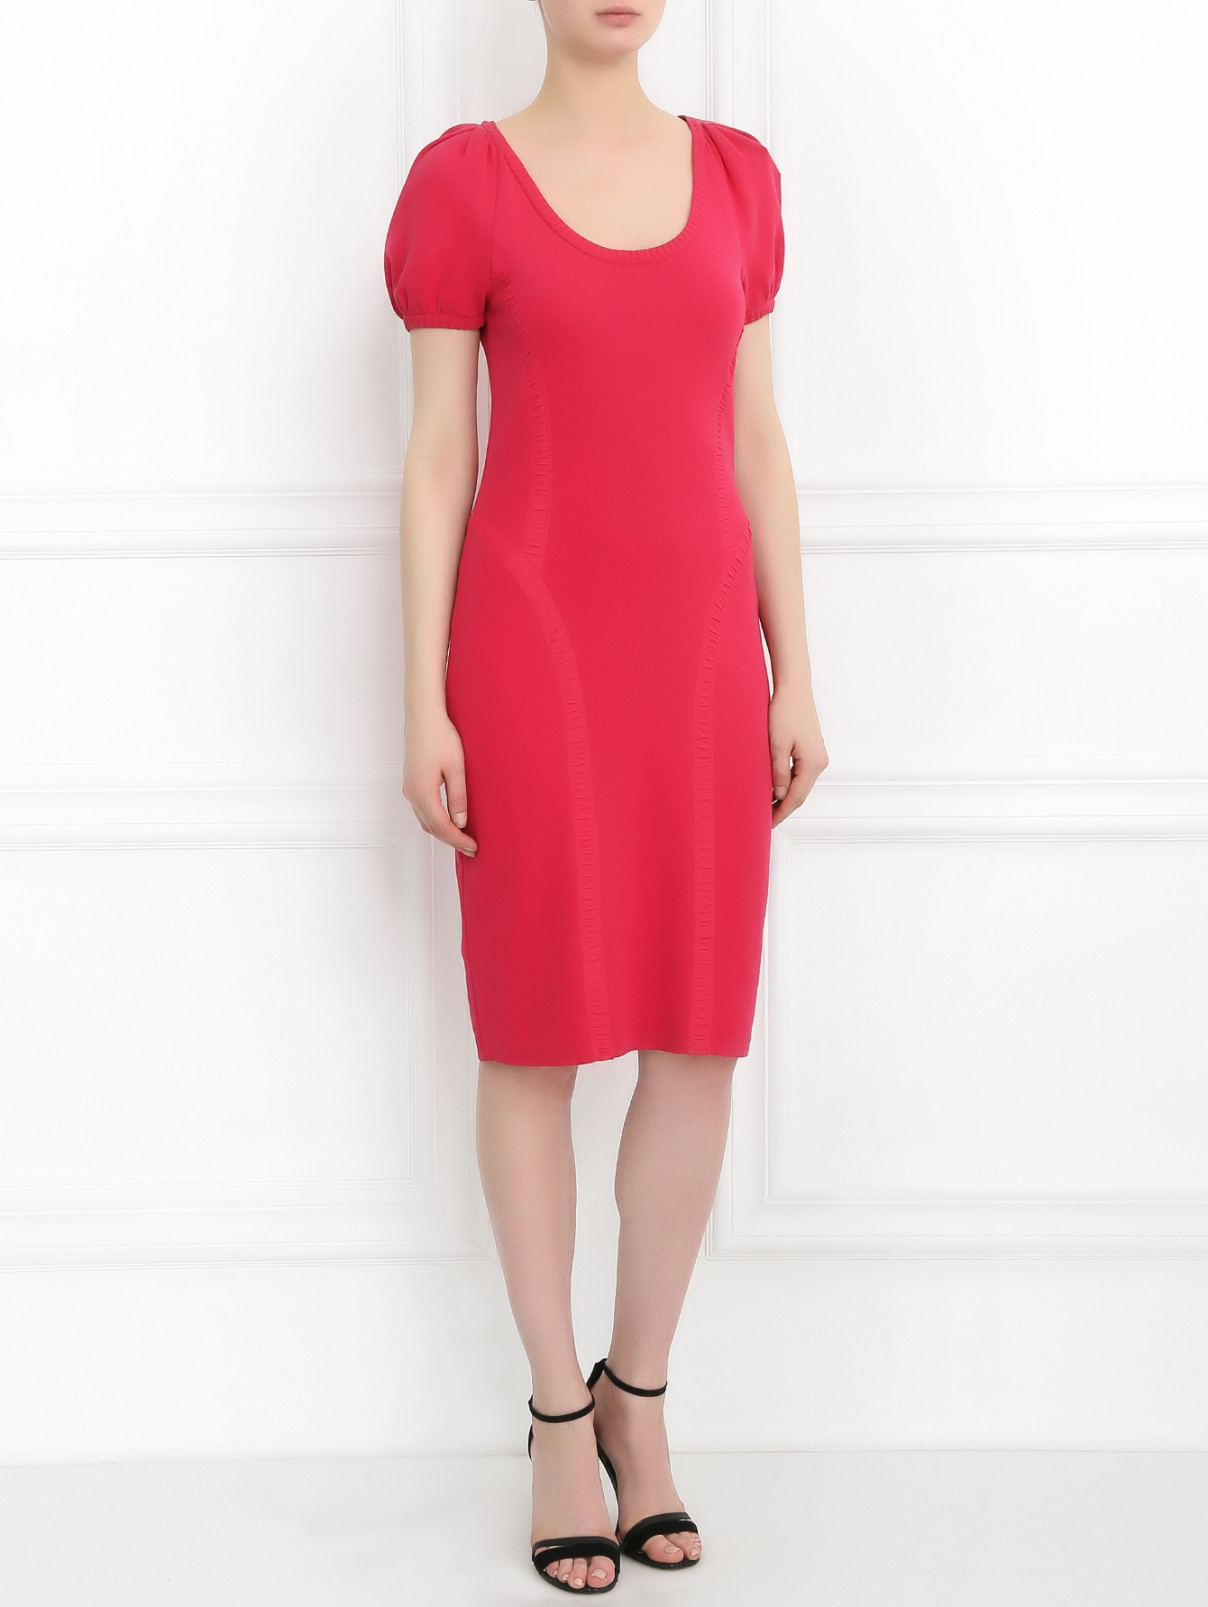 Платье из хлопка с короткими рукавами Iceberg  –  Модель Общий вид  – Цвет:  Розовый